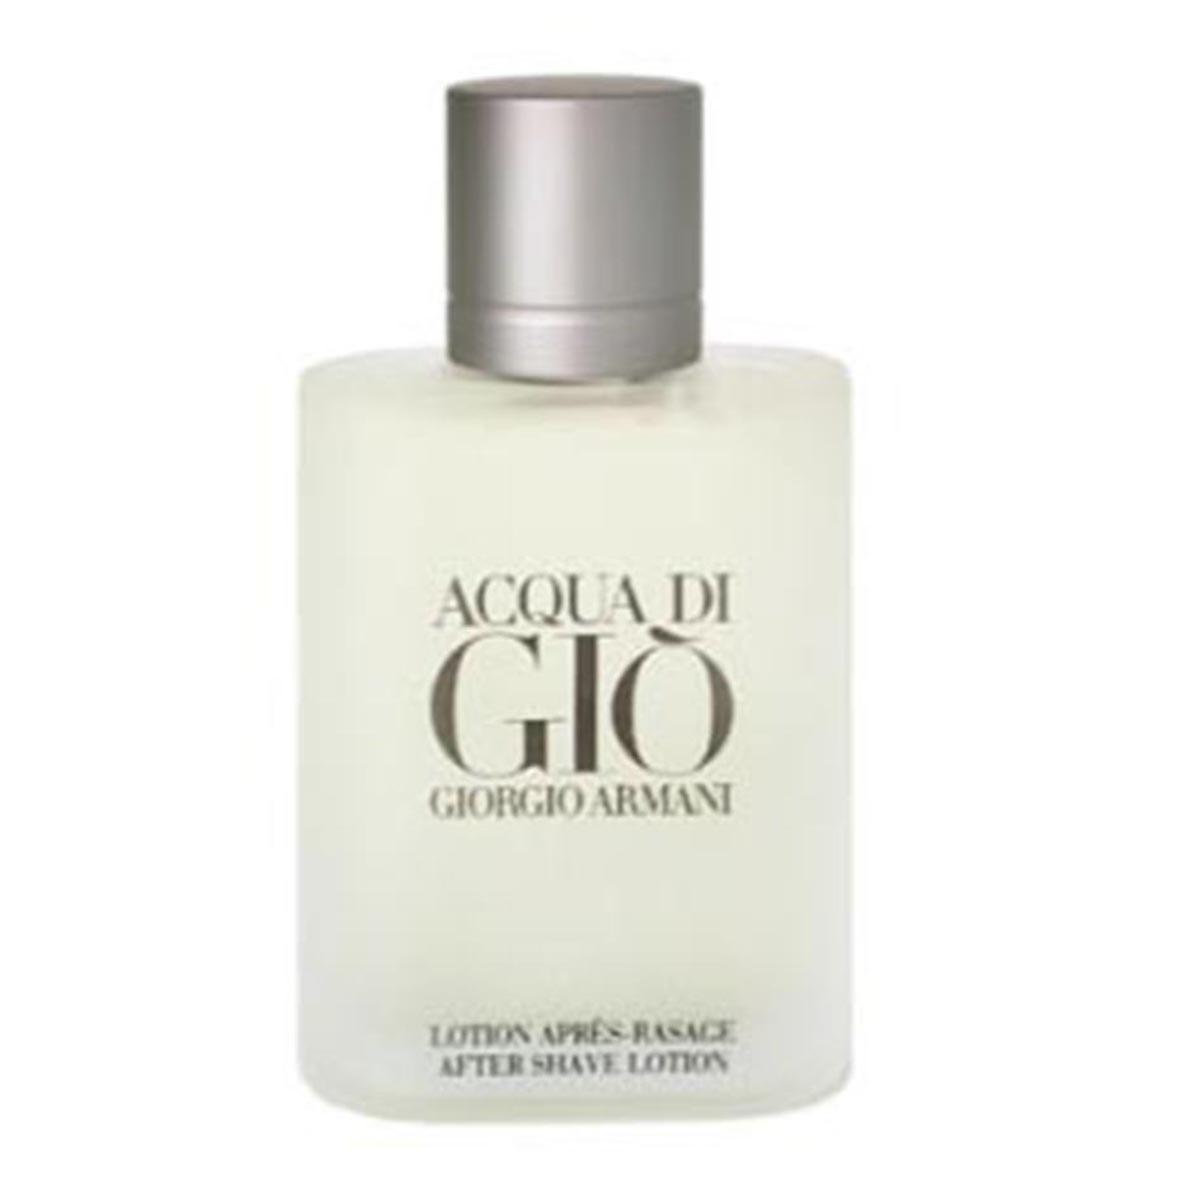 giorgio-armani-acqua-gio-men-after-shave-100ml-lotion